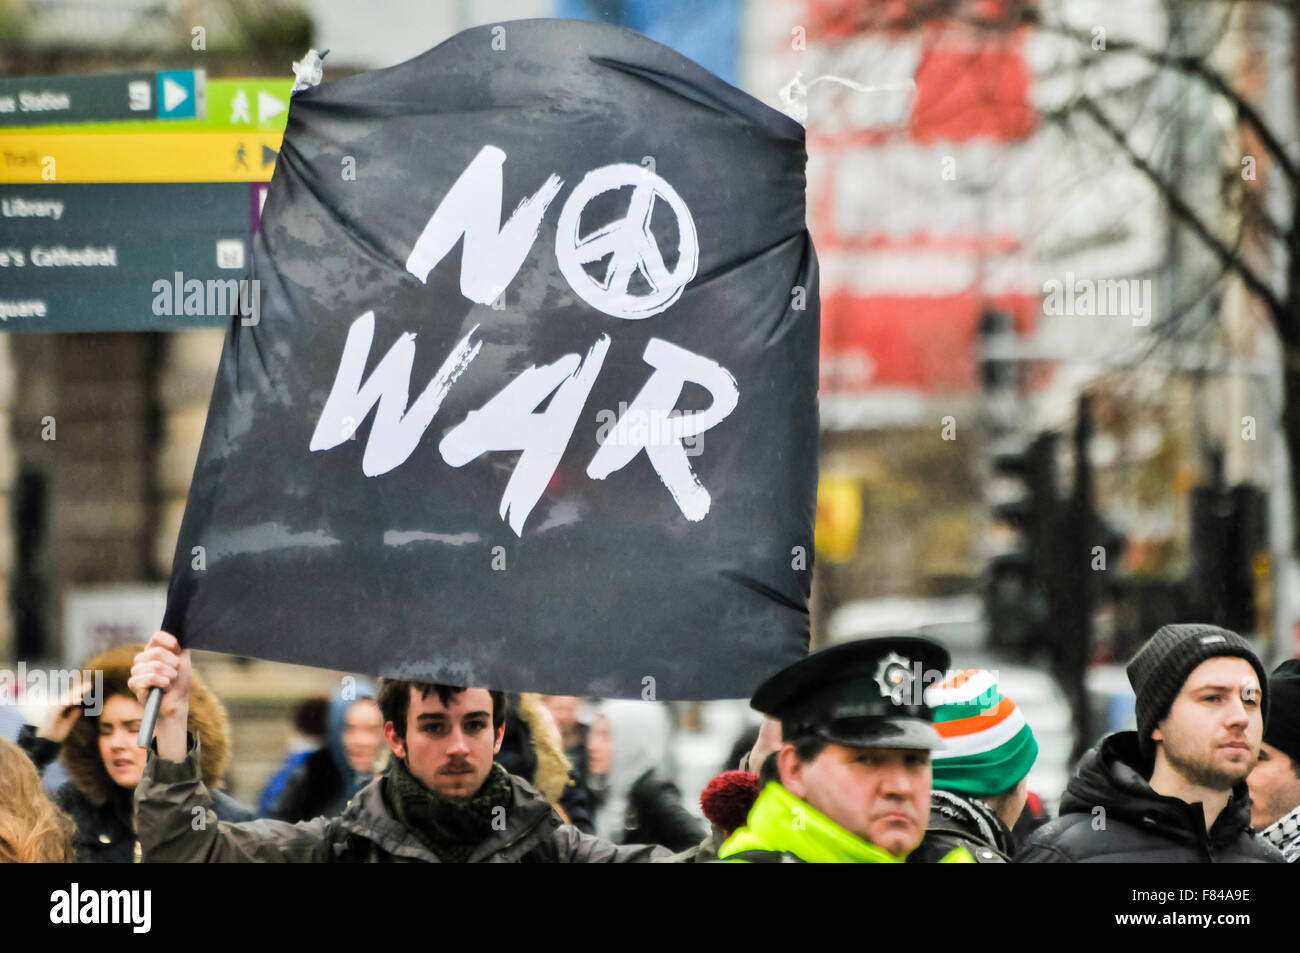 Belfast, Irlanda del Norte. 05 Dec 2015 - Un hombre sostiene una pancarta que dice "No a la guerra" (con el símbolo de la CND) en una manifestación de protesta de crédito: Stephen Barnes/Alamy Live News Foto de stock